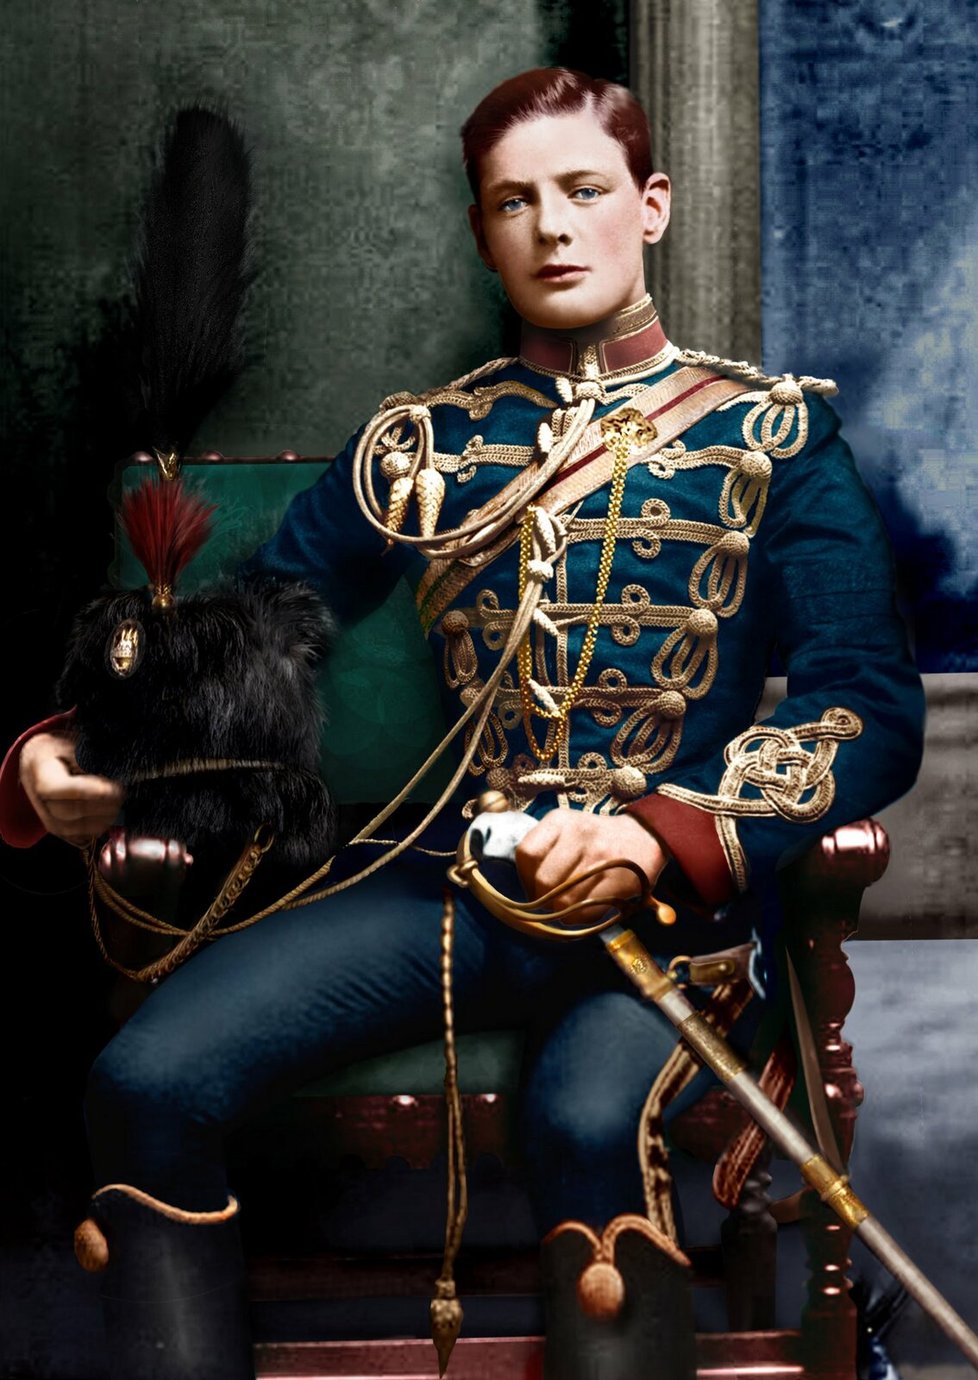 Podporučík Winston Churchill ještě jako člen 4. husarského pluku královny v roce 1895.